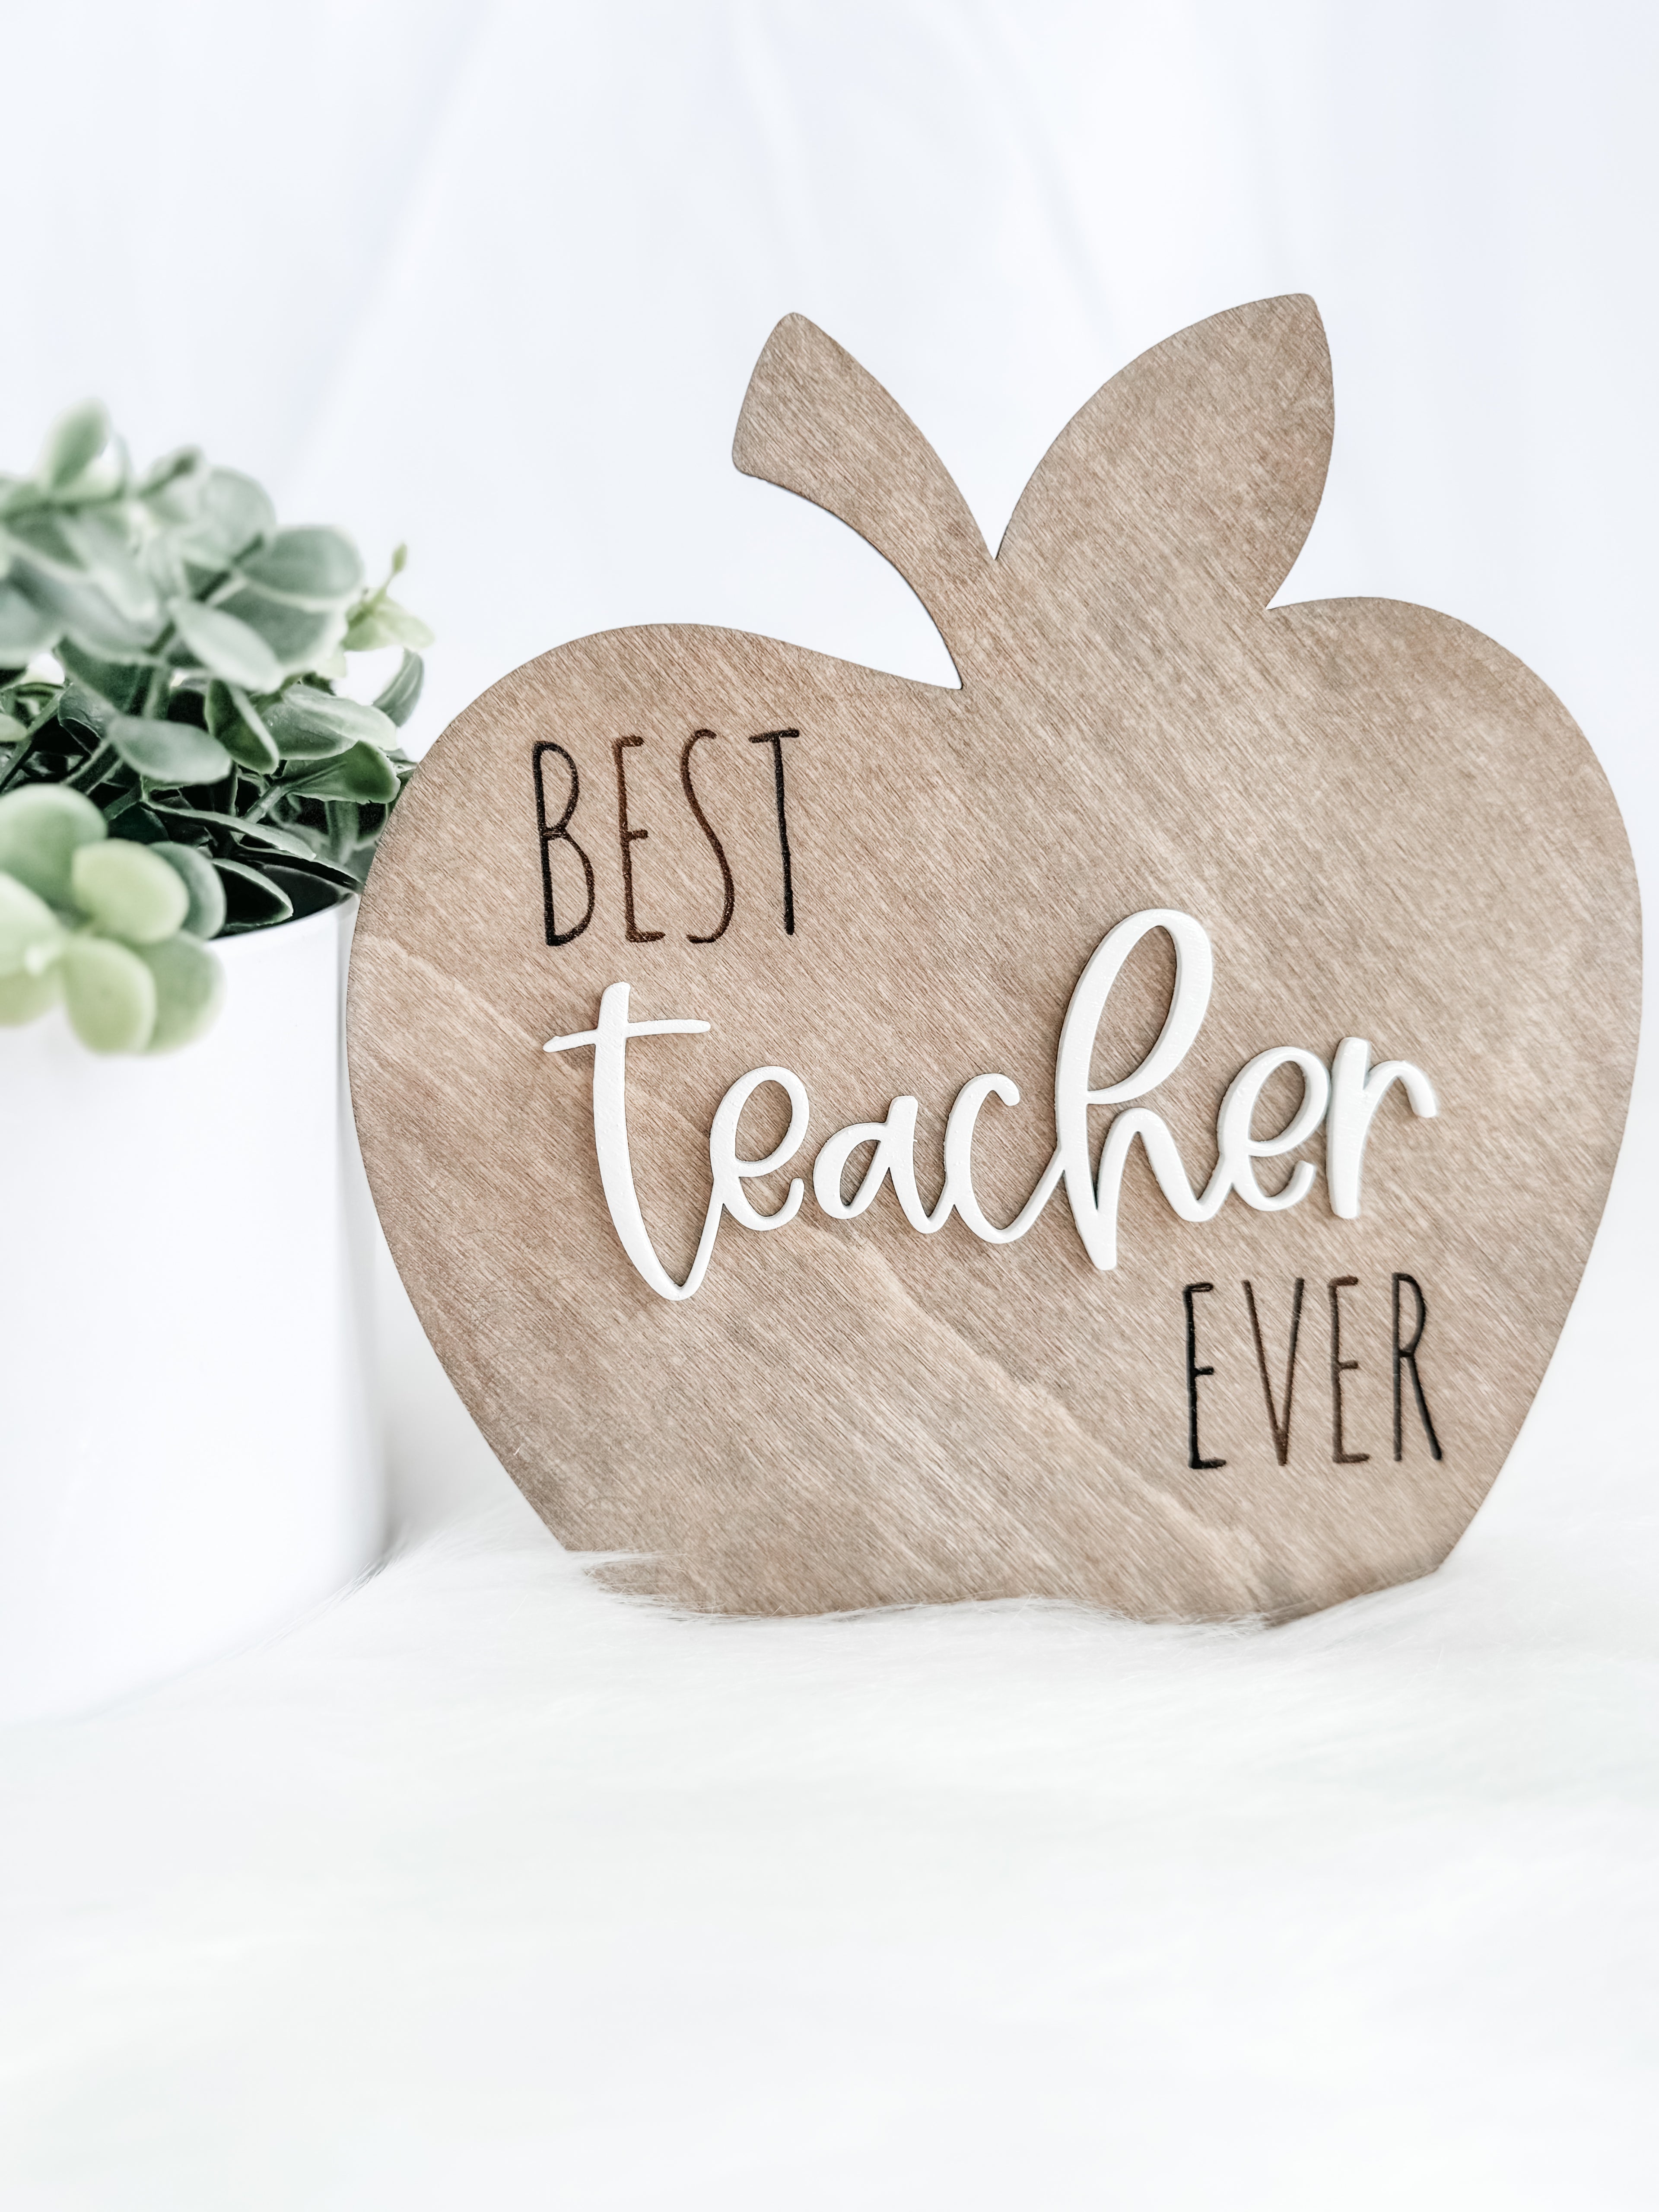 Wooden Teacher Gift Signs | Classroom Decor | Best Teacher Ever| Handmade Gifts | Engraved Apple | 3D Wall Decor - EllaLaine